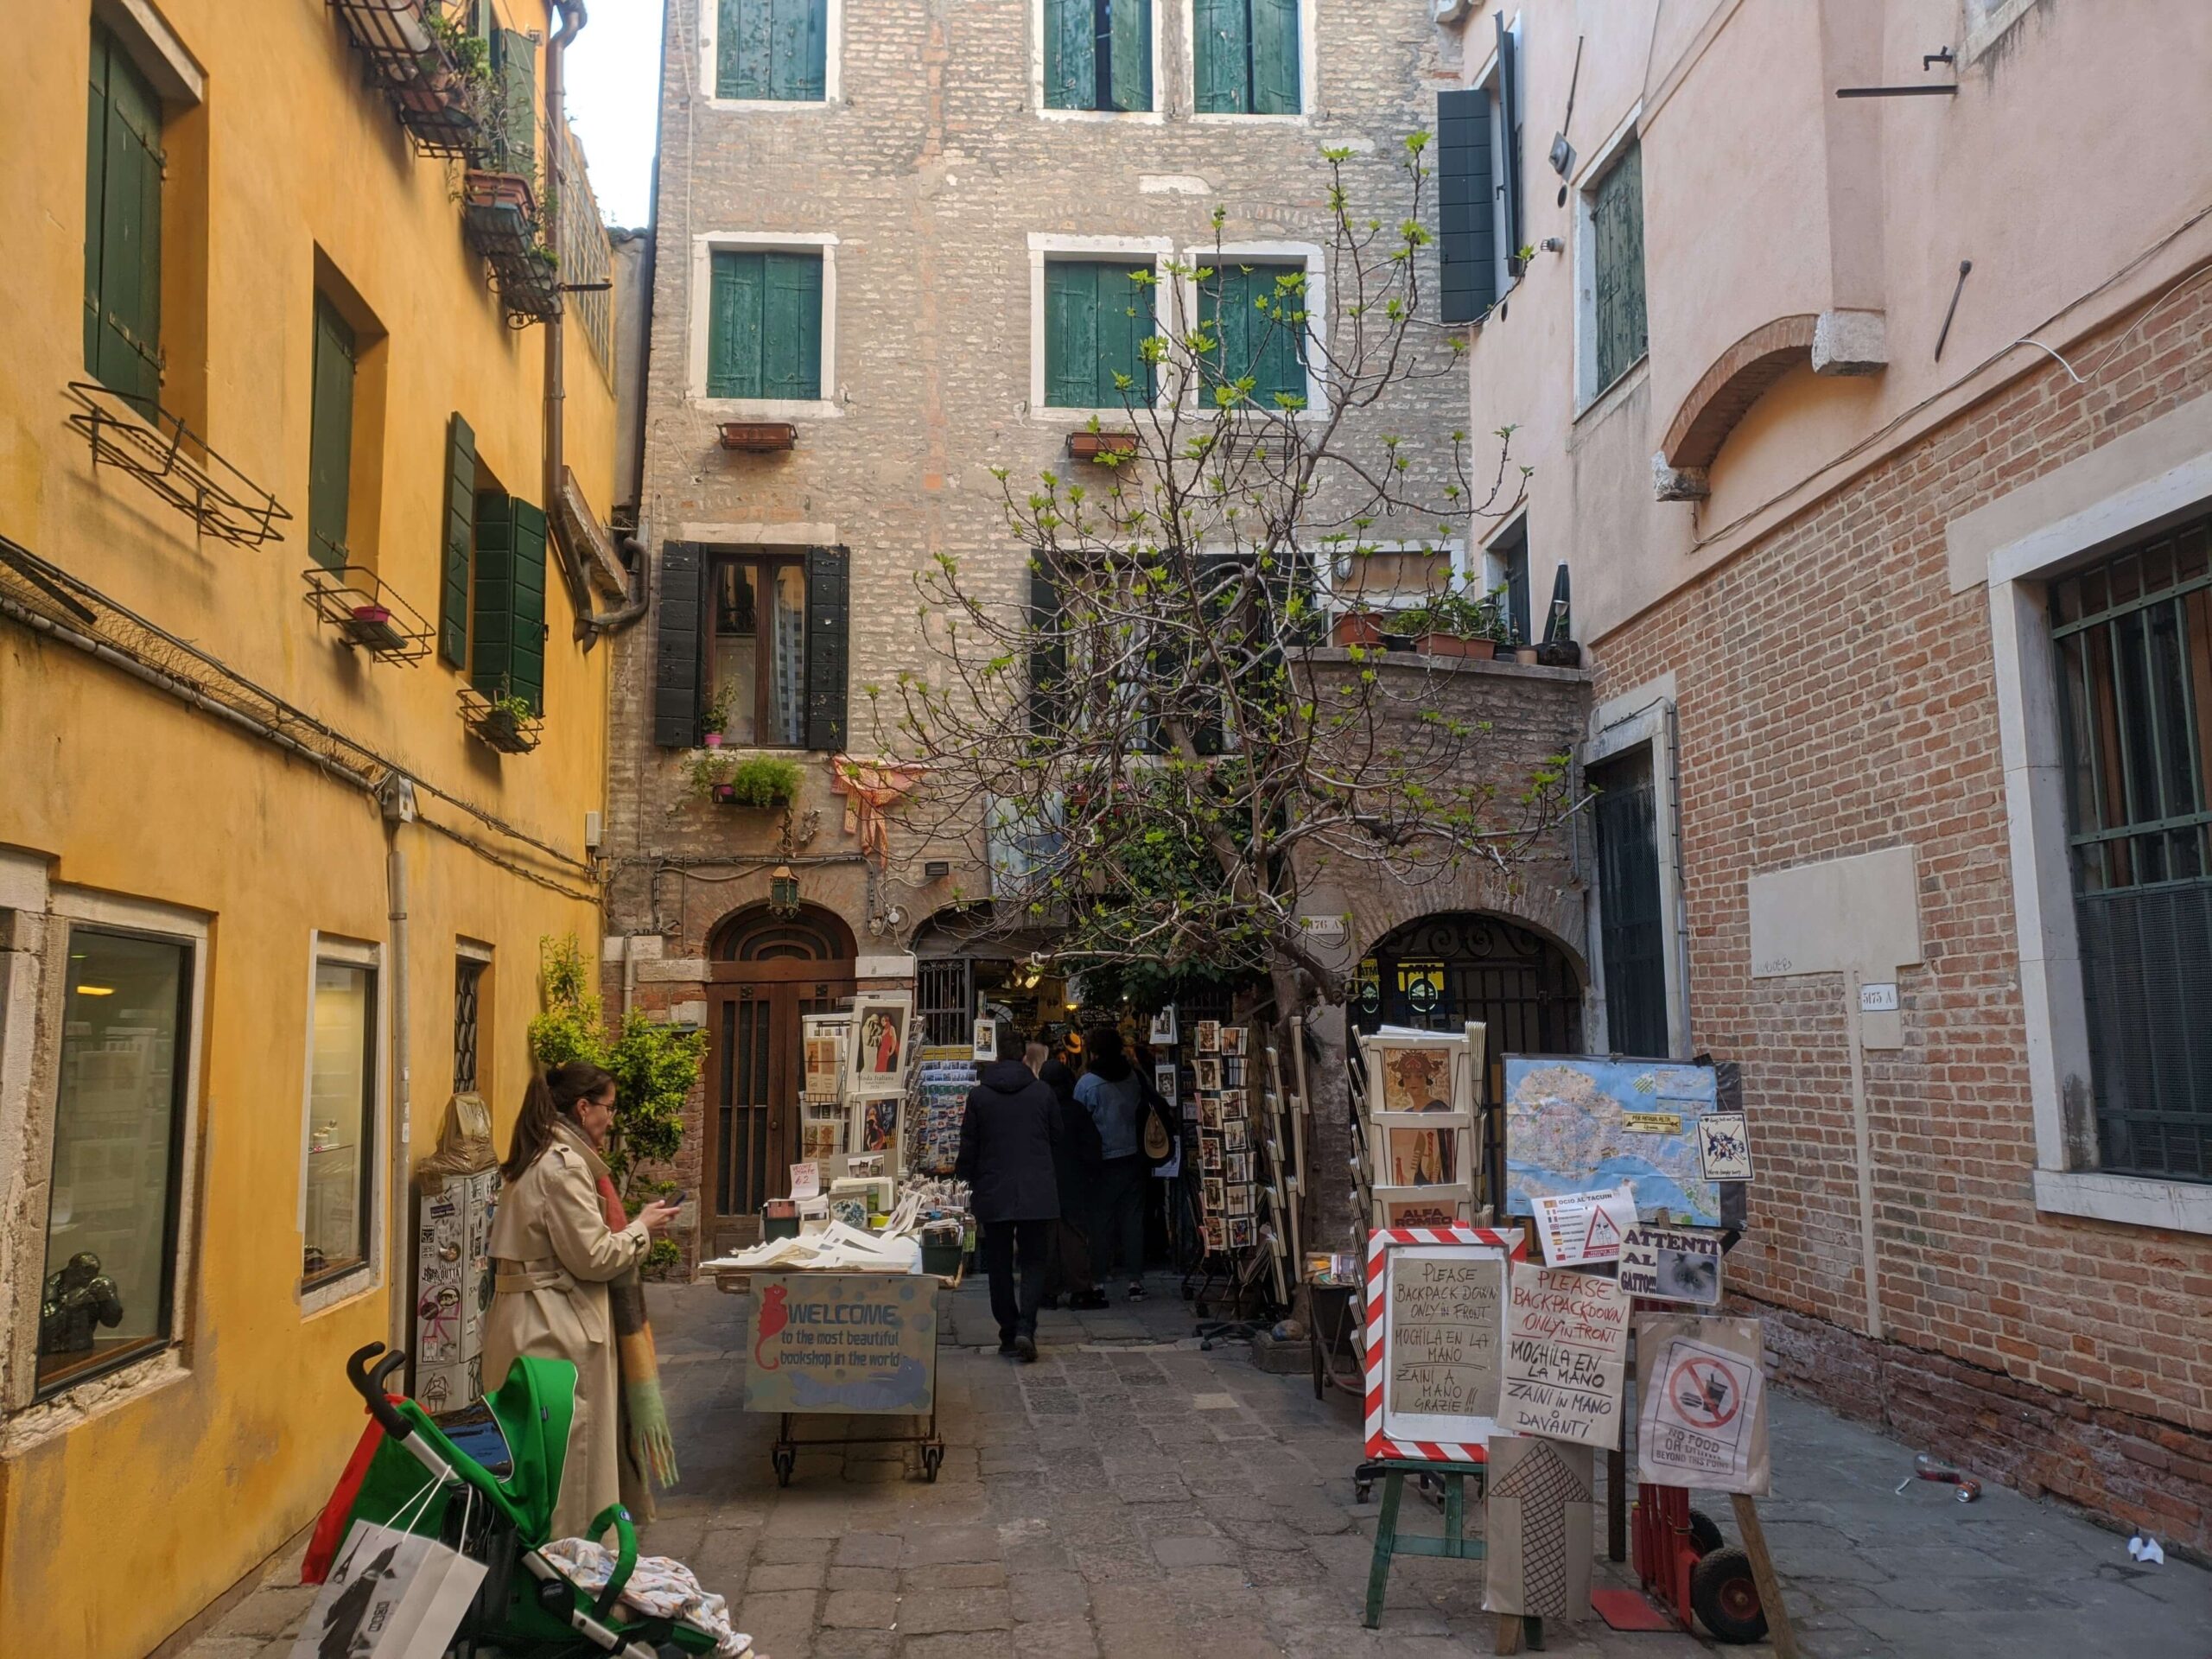 Uma rua de Veneza com prédios de tons quentes e uma pequena loja de arte ao ar livre. Pessoas caminham e exploram as mercadorias à venda, e há uma árvore que adiciona um toque de verde à cena urbana.